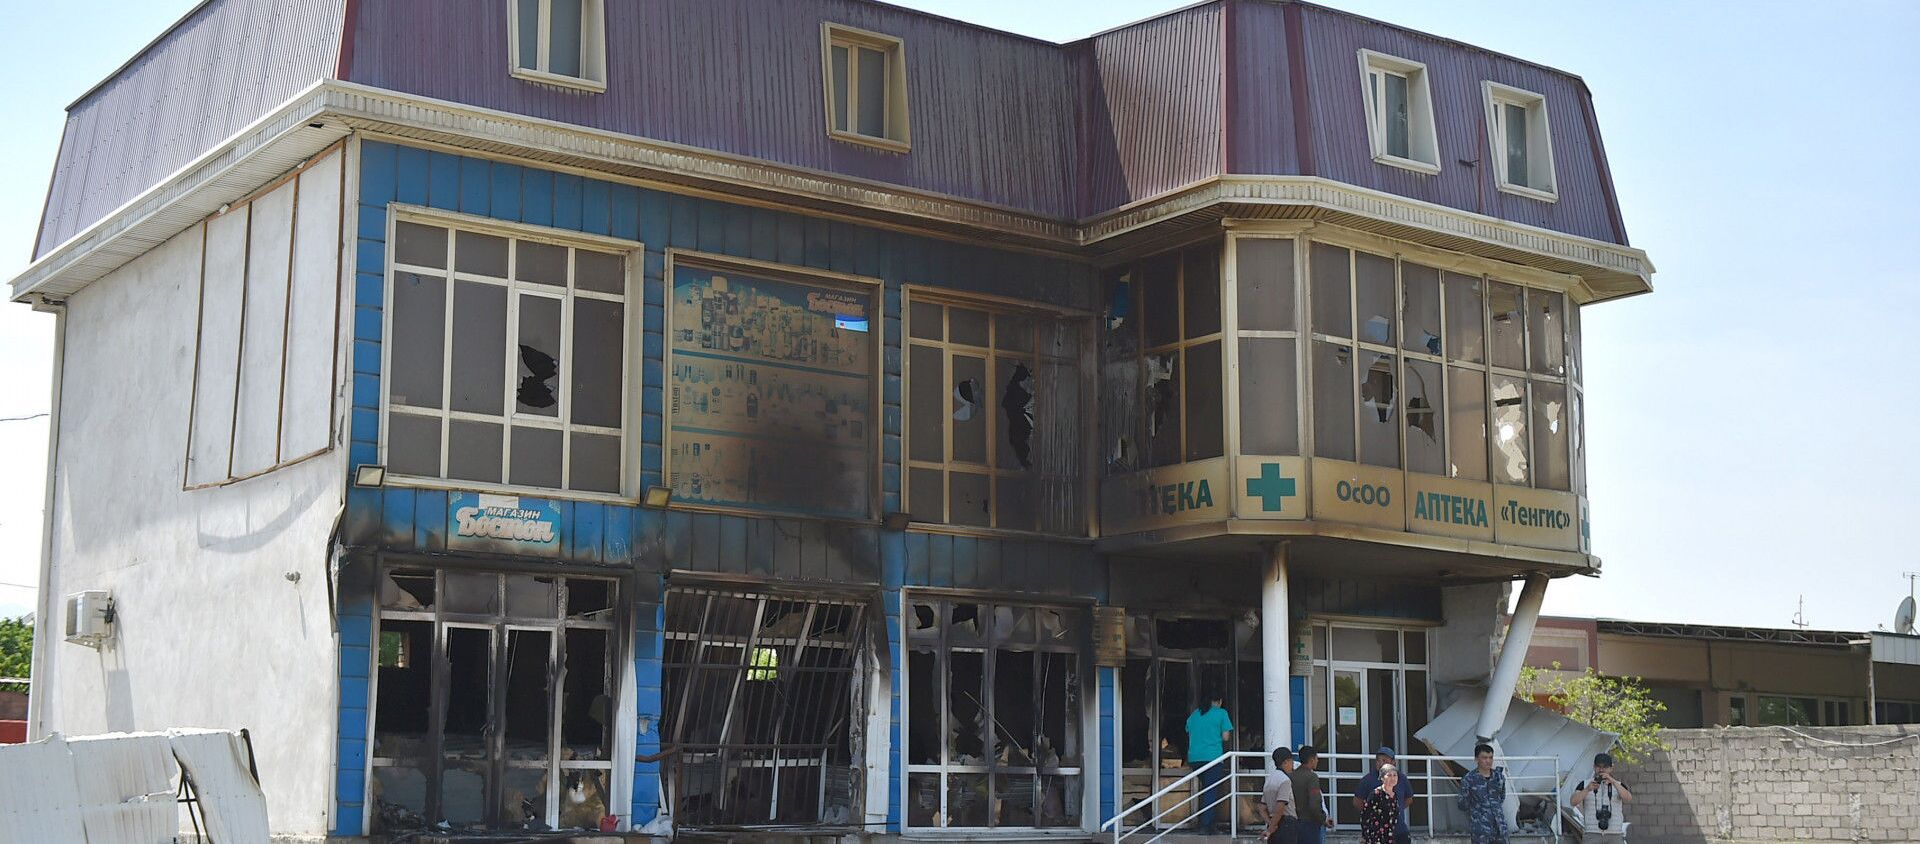 Разрушенное здание в Баткенской области разрушенное в ходе приграничного конфликта на кыргызско-таджикской границе - Sputnik Кыргызстан, 1920, 09.08.2021